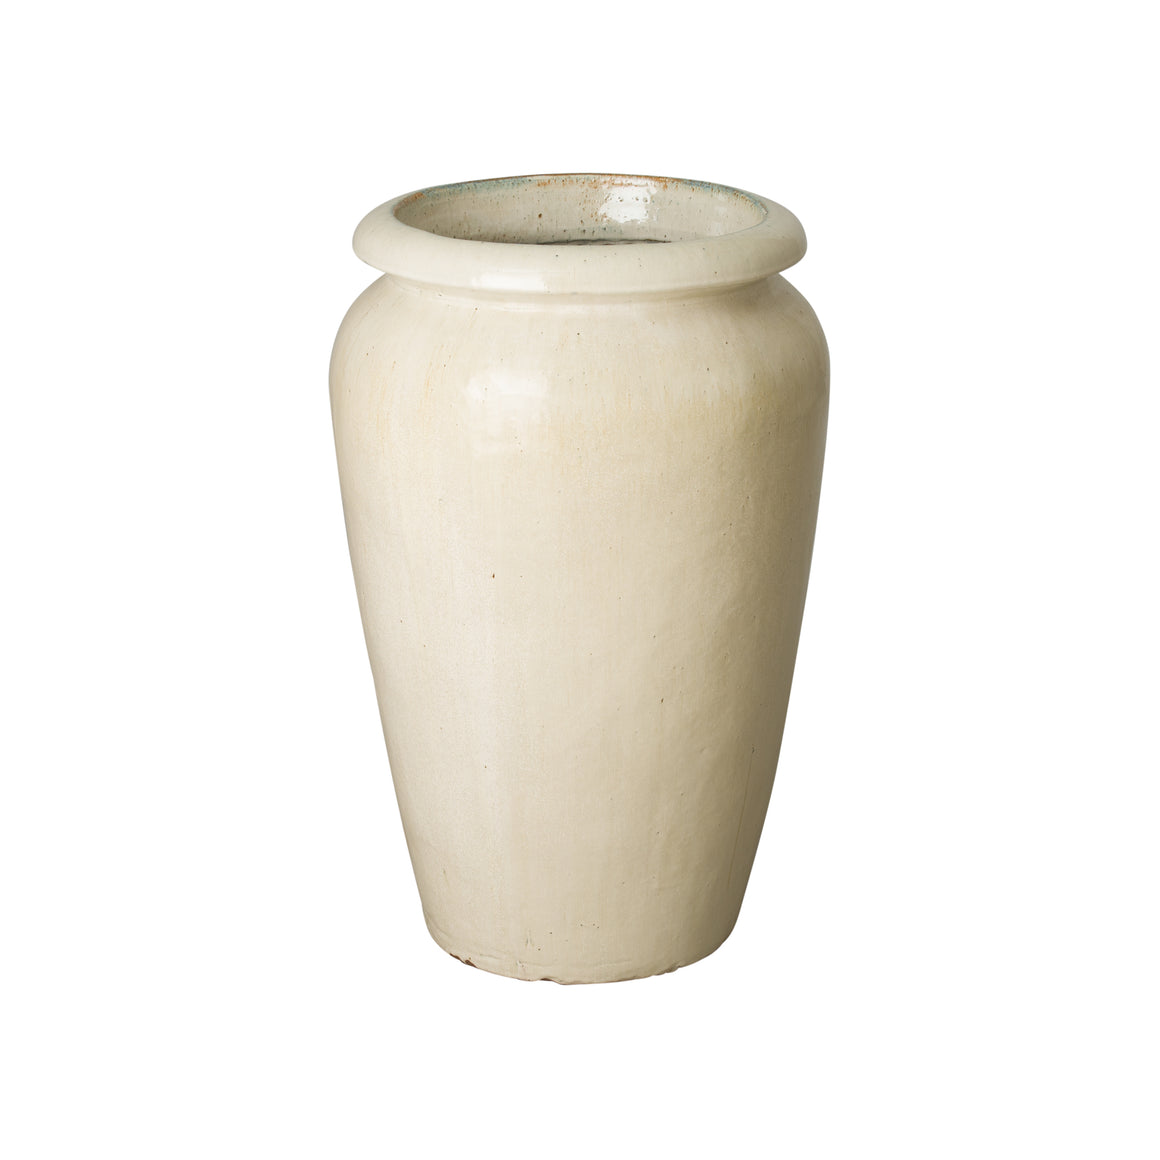 Tall Ceramic Planter with a Distressed Cream Glaze